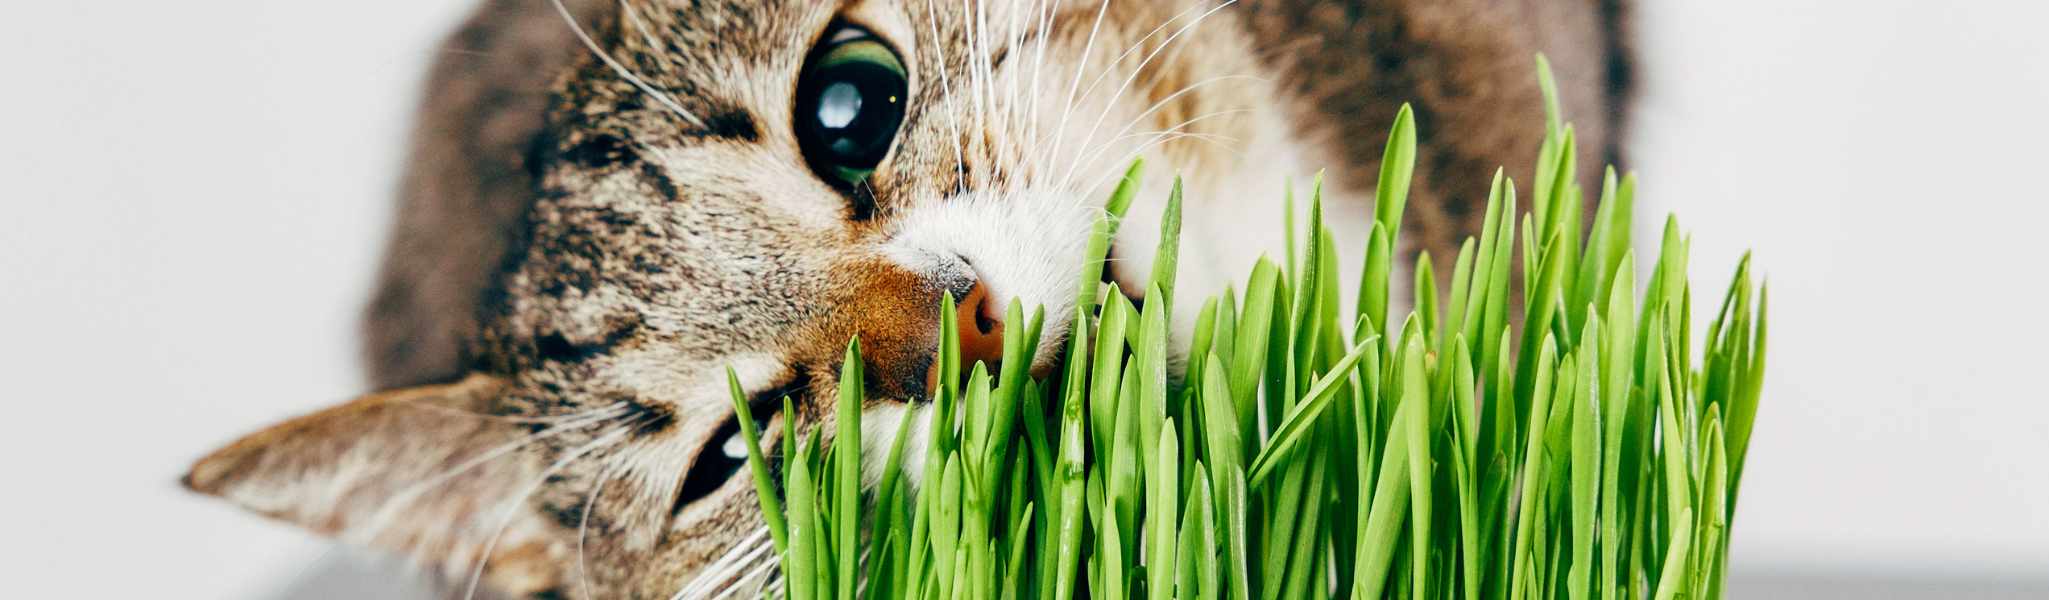 Herbe à chat : effets et besoins pour le chat